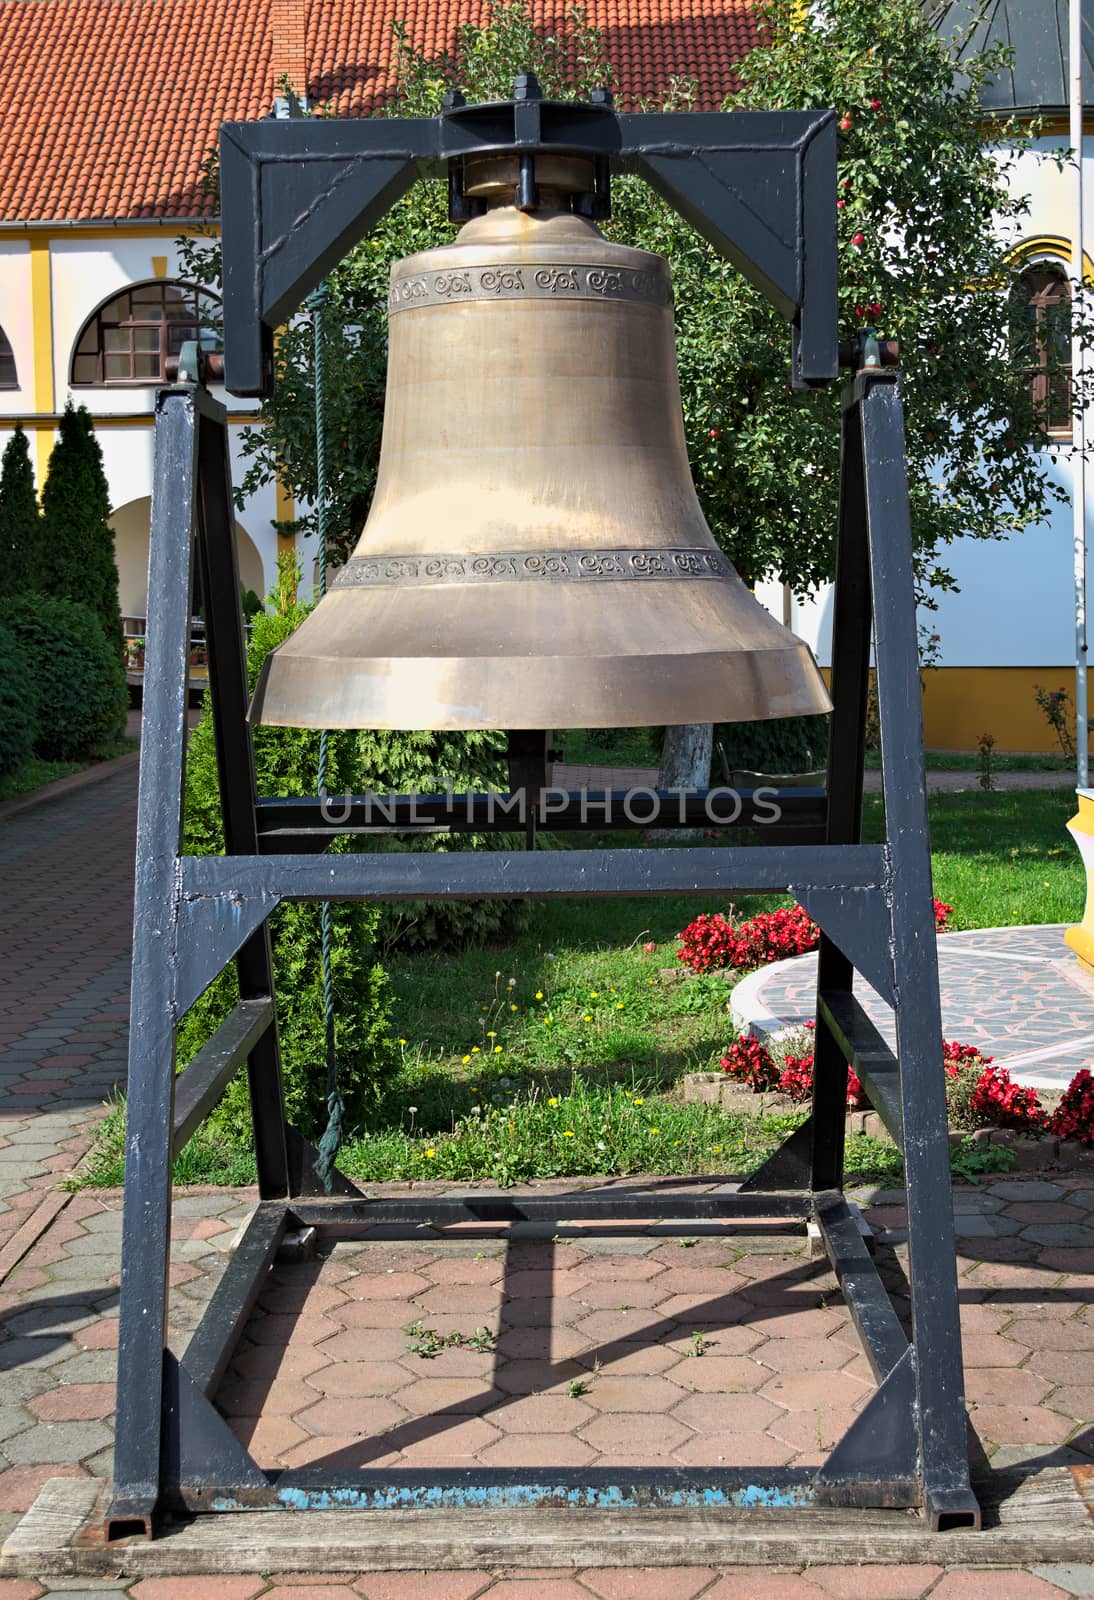 Big church bell in monastery garden, closeup by sheriffkule